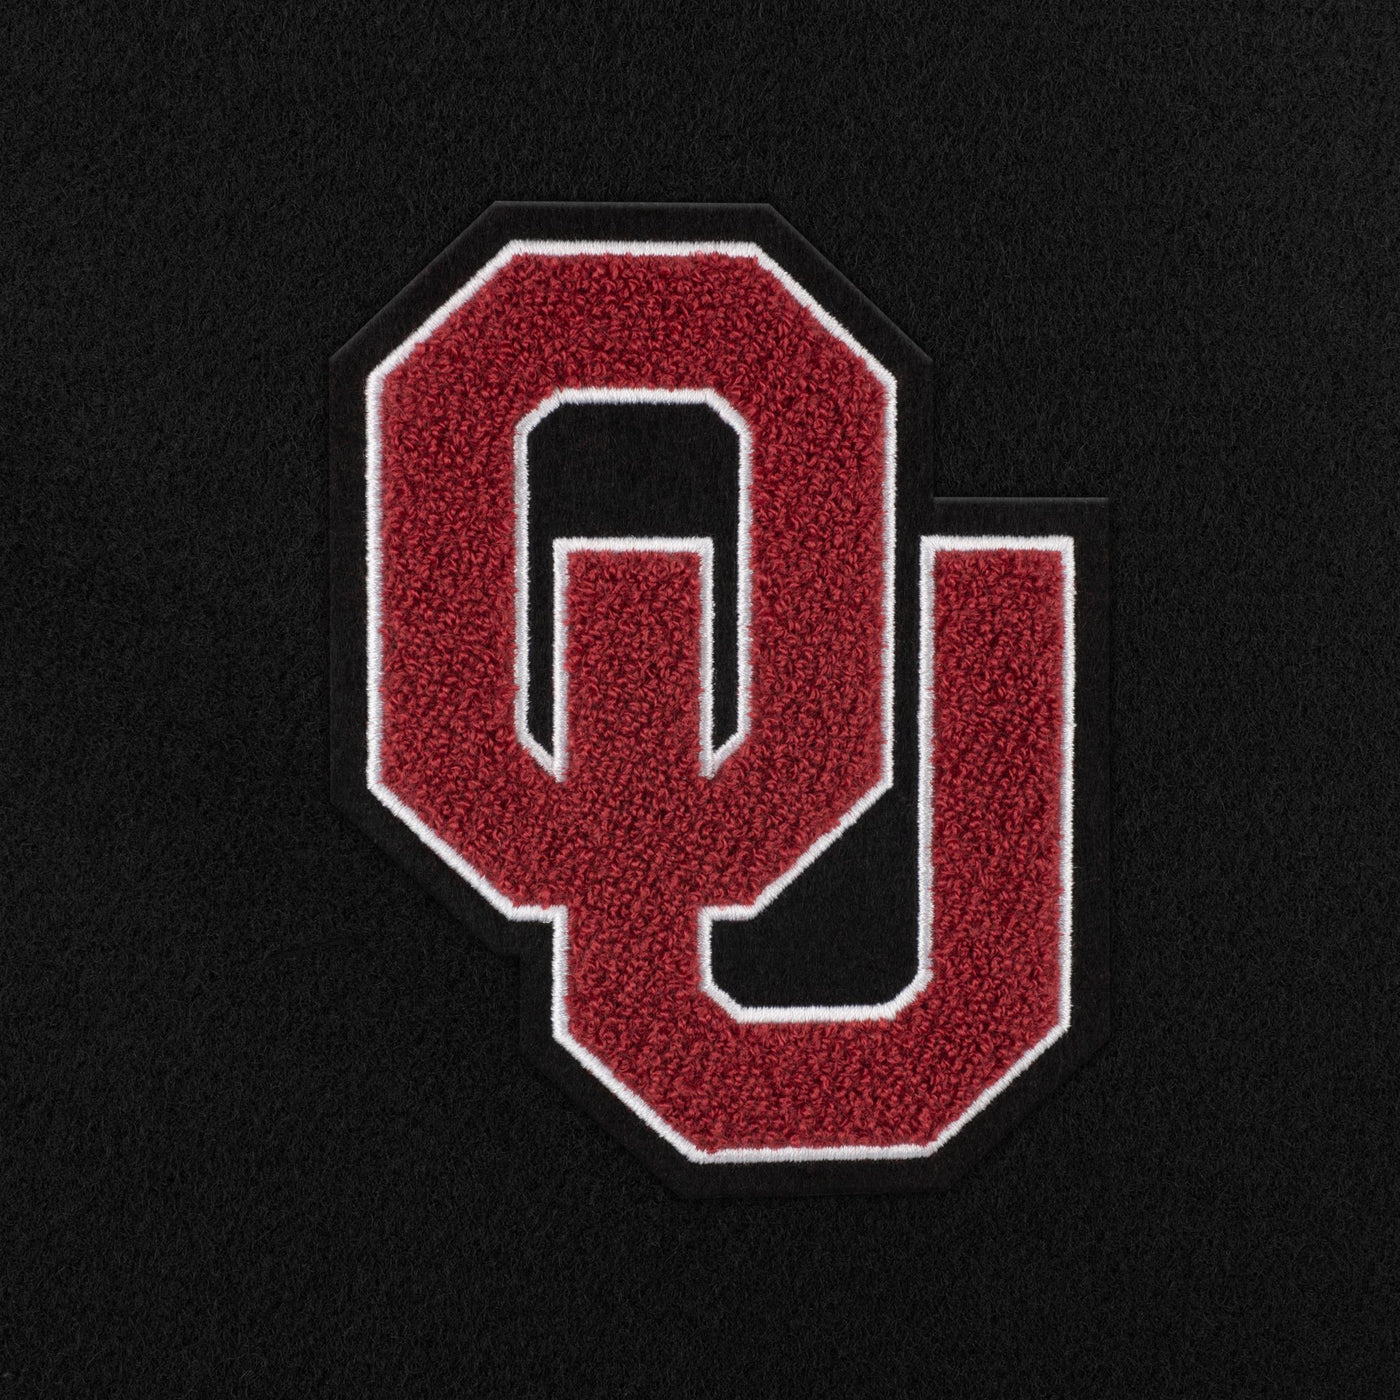 Oklahoma Sooners "OU" Weekender Duffle Bag